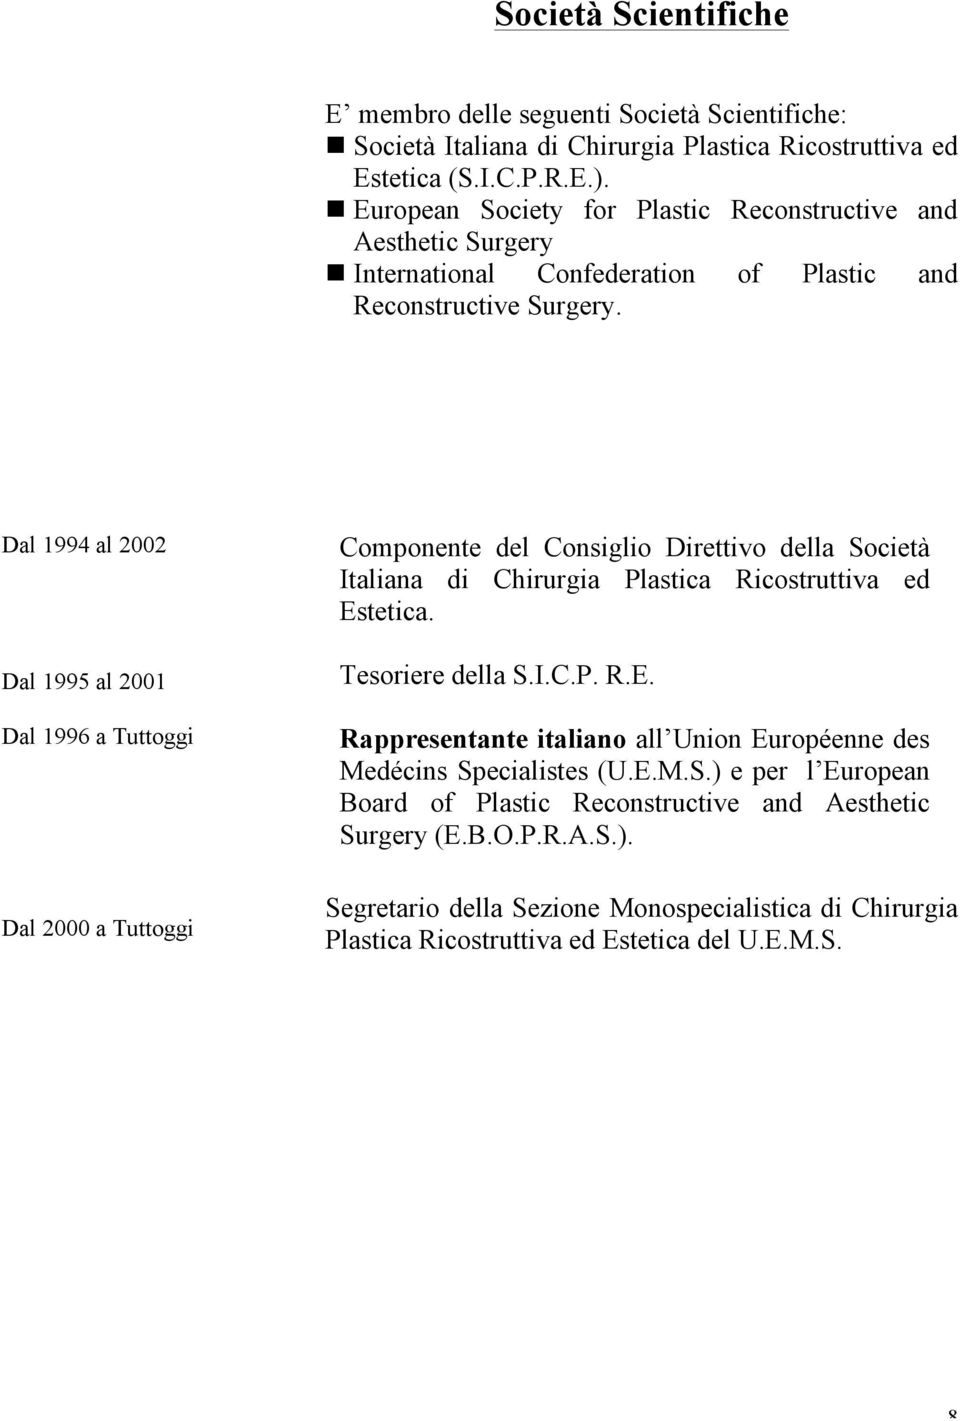 Dal 1994 al 2002 Dal 1995 al 2001 Dal 1996 a Tuttoggi Dal 2000 a Tuttoggi Componente del Consiglio Direttivo della Società Italiana di Chirurgia Plastica Ricostruttiva ed Estetica.